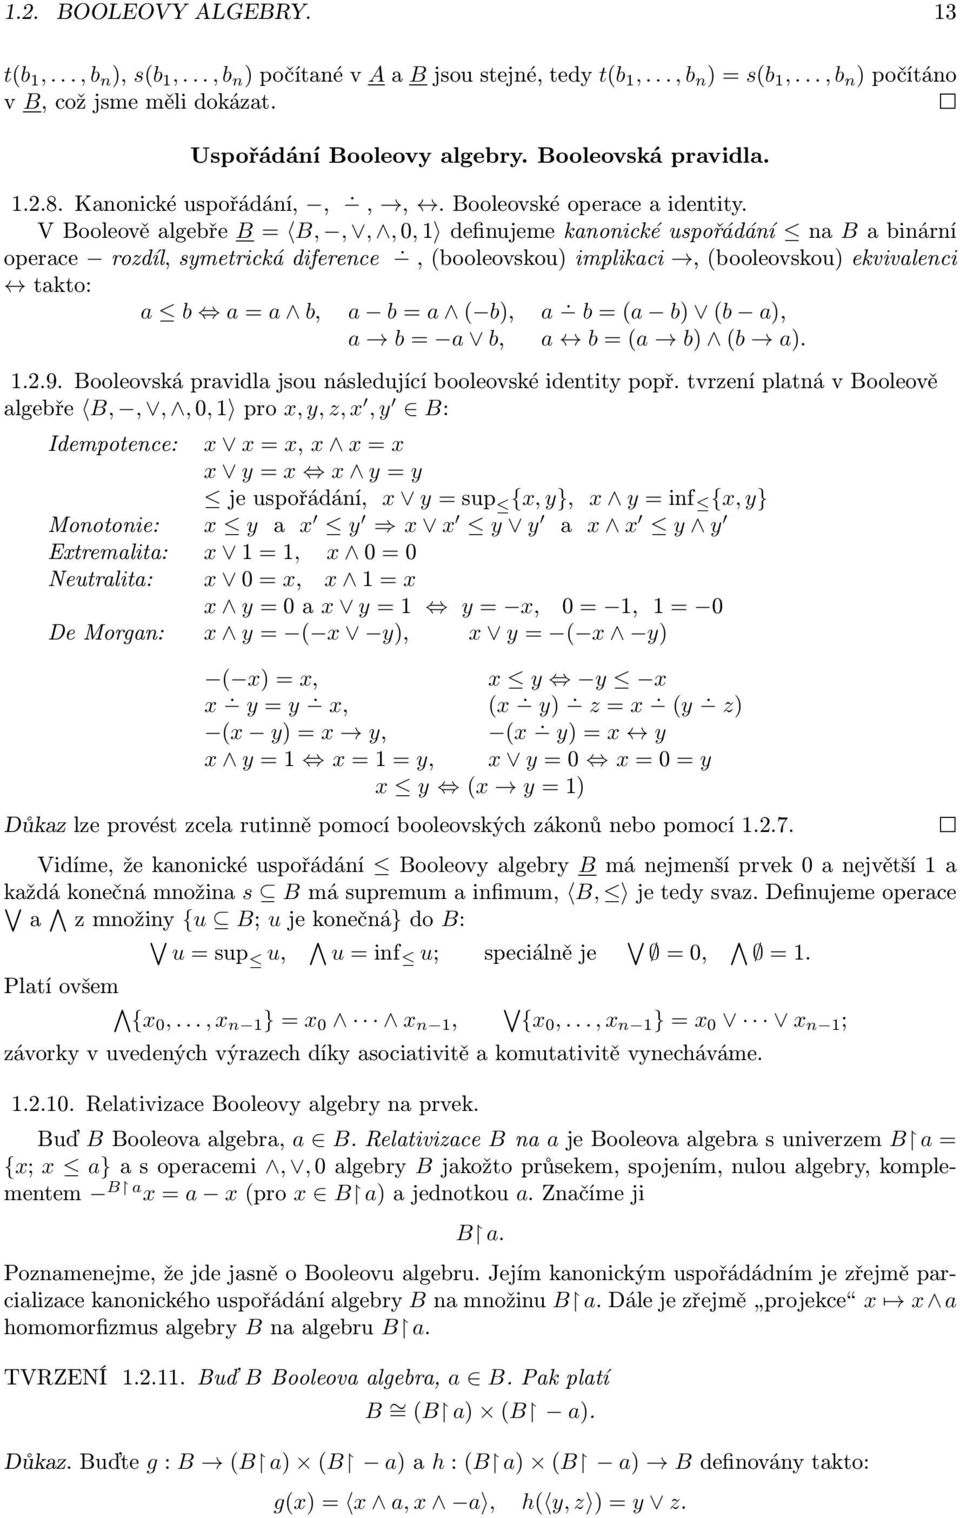 VBooleověalgebře B= B,,,,0,1 definujemekanonickéuspořádání na Babinární operace rozdíl,symetrickádiference,(booleovskou)implikaci,(booleovskou)ekvivalenci takto: a b a=a b, a b=a ( b), a b=(a b) (b